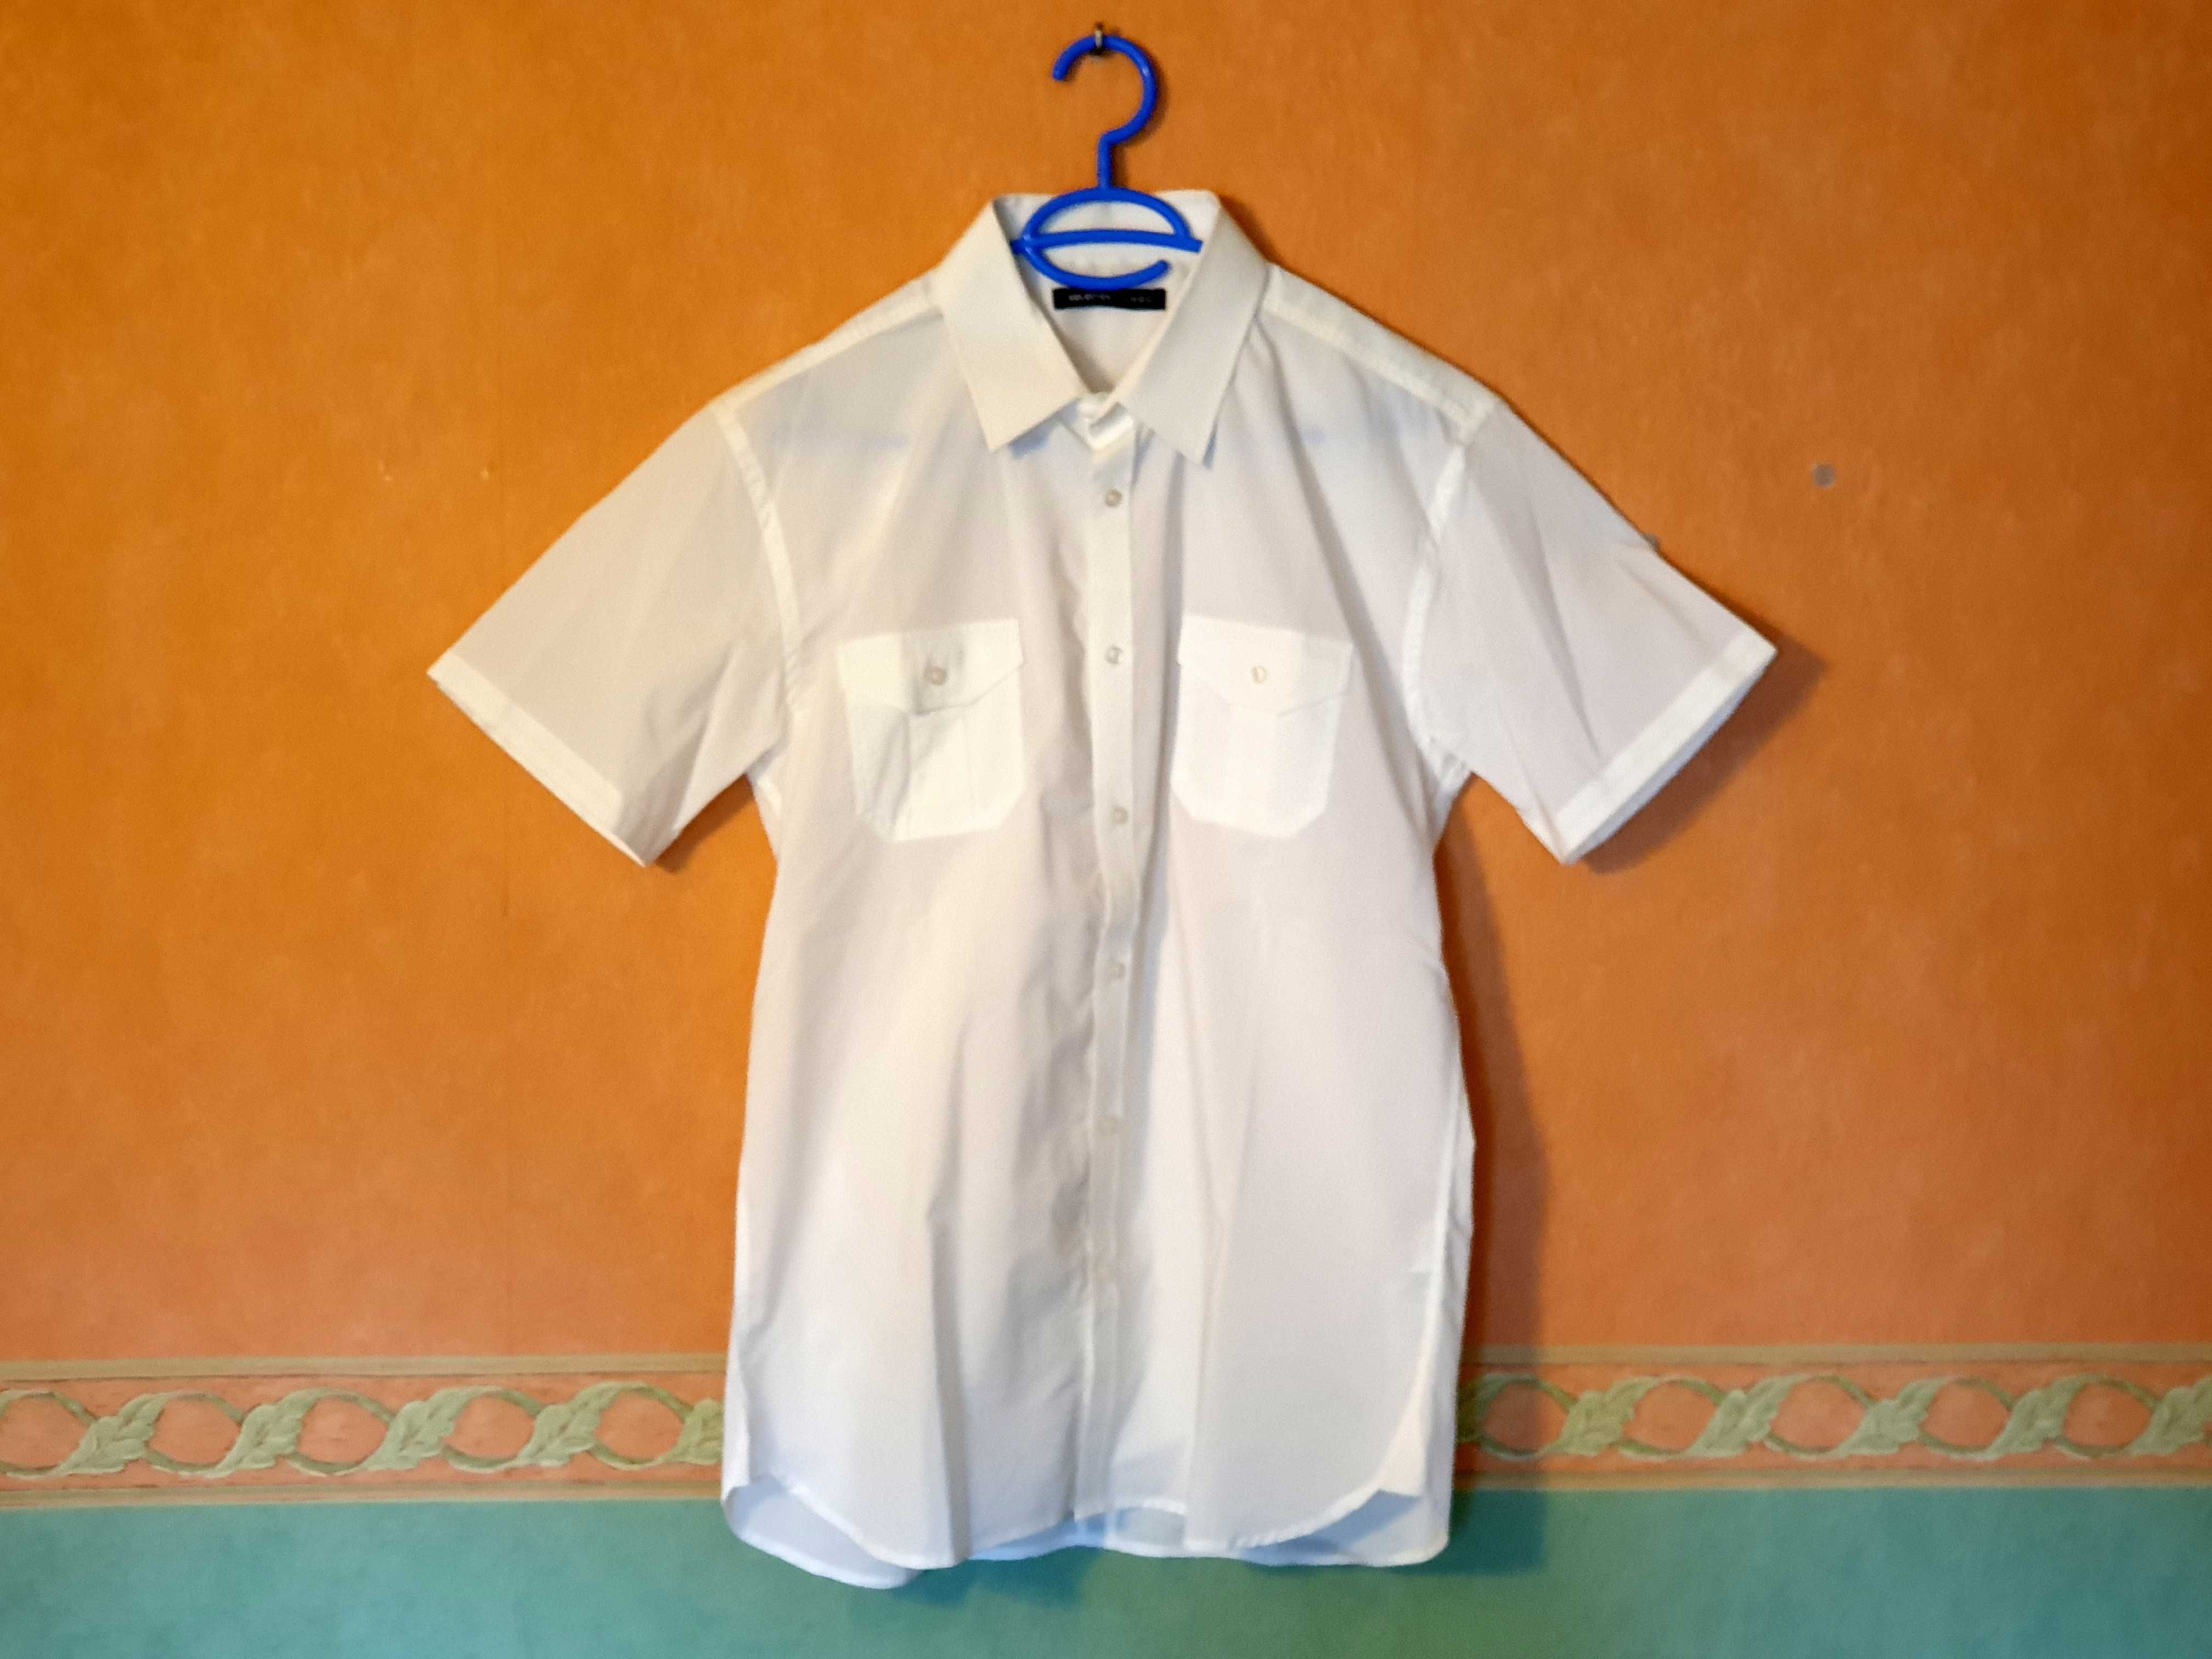 Koszula męska - krótki rękaw - Selected - homme - size L - 42